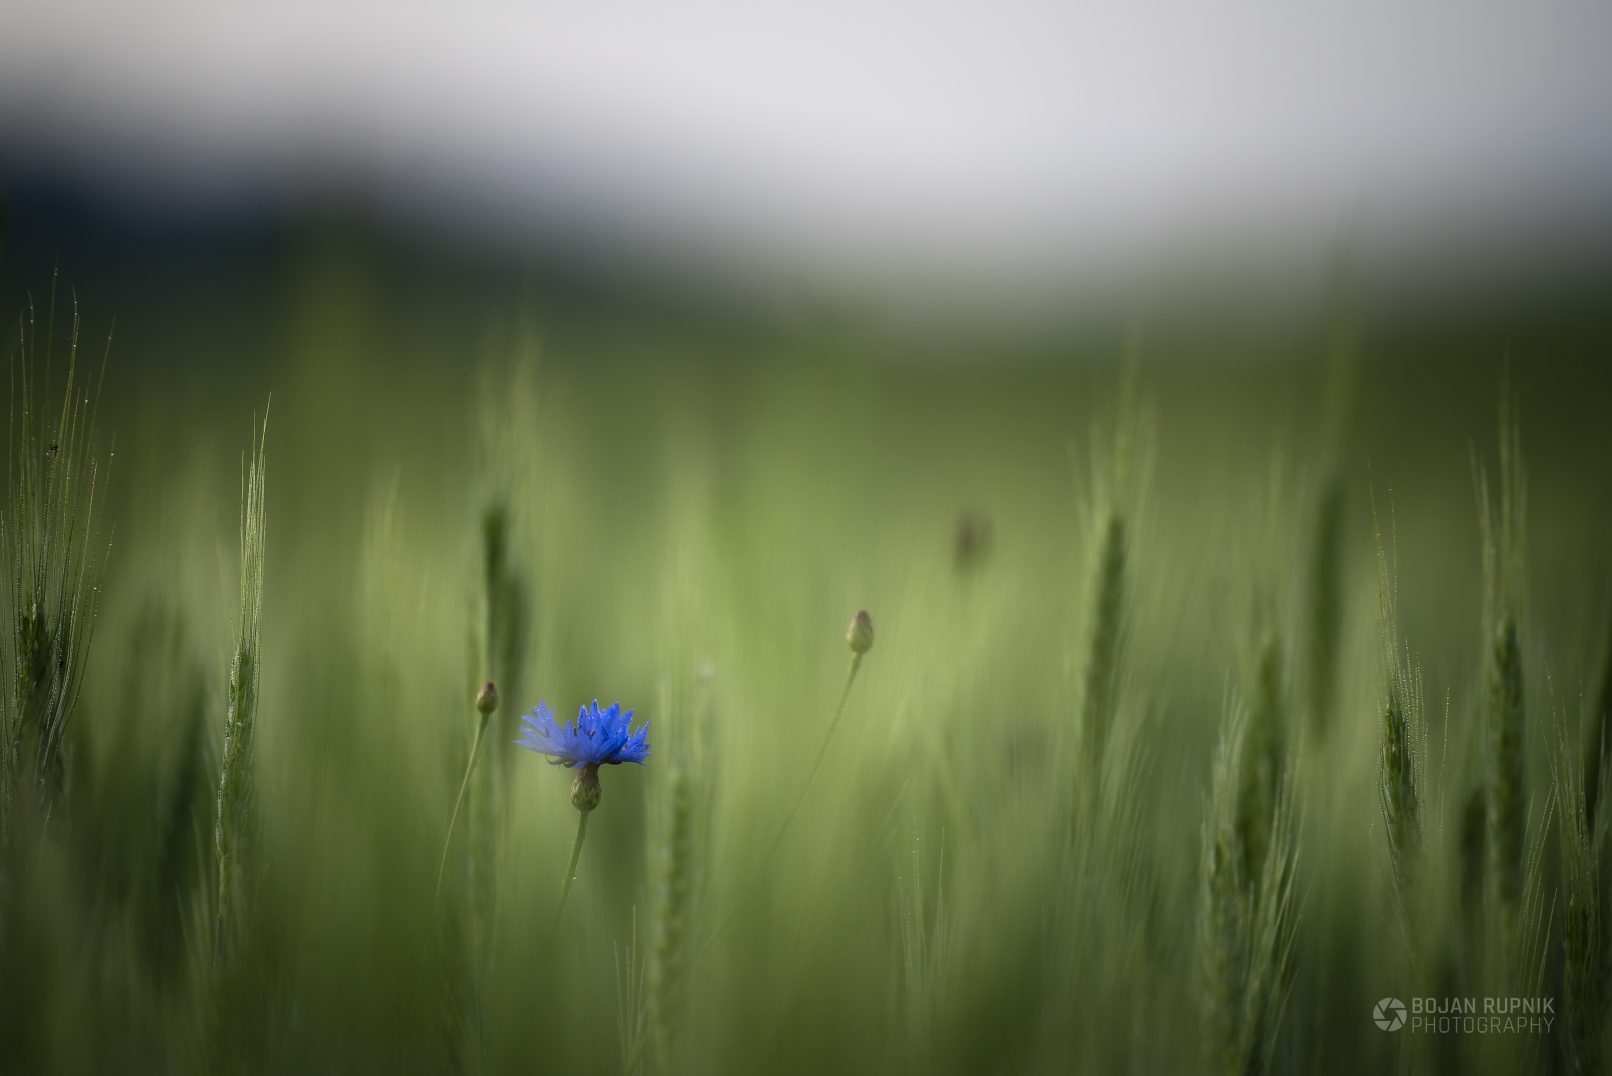 Modri glavinec ali plavica sredi žitnega polja